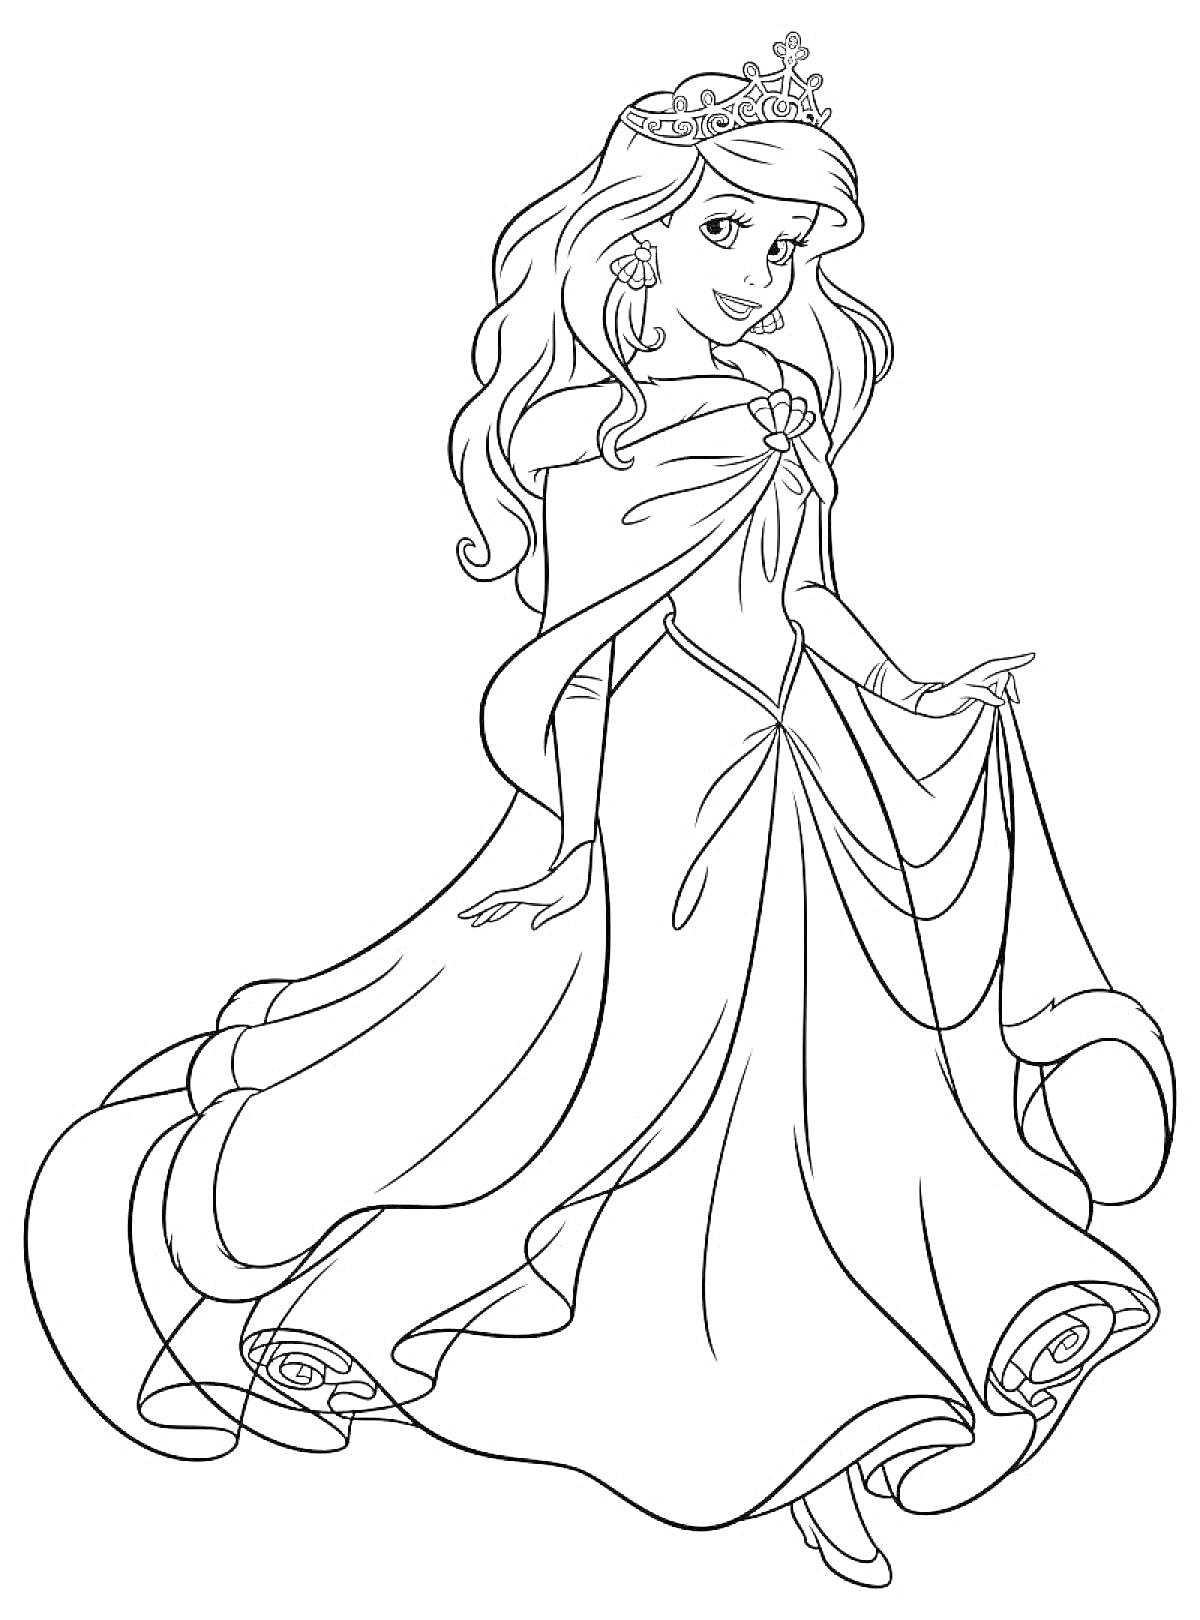 Раскраска Принцесса в пышном платье с короной и длинными волосами